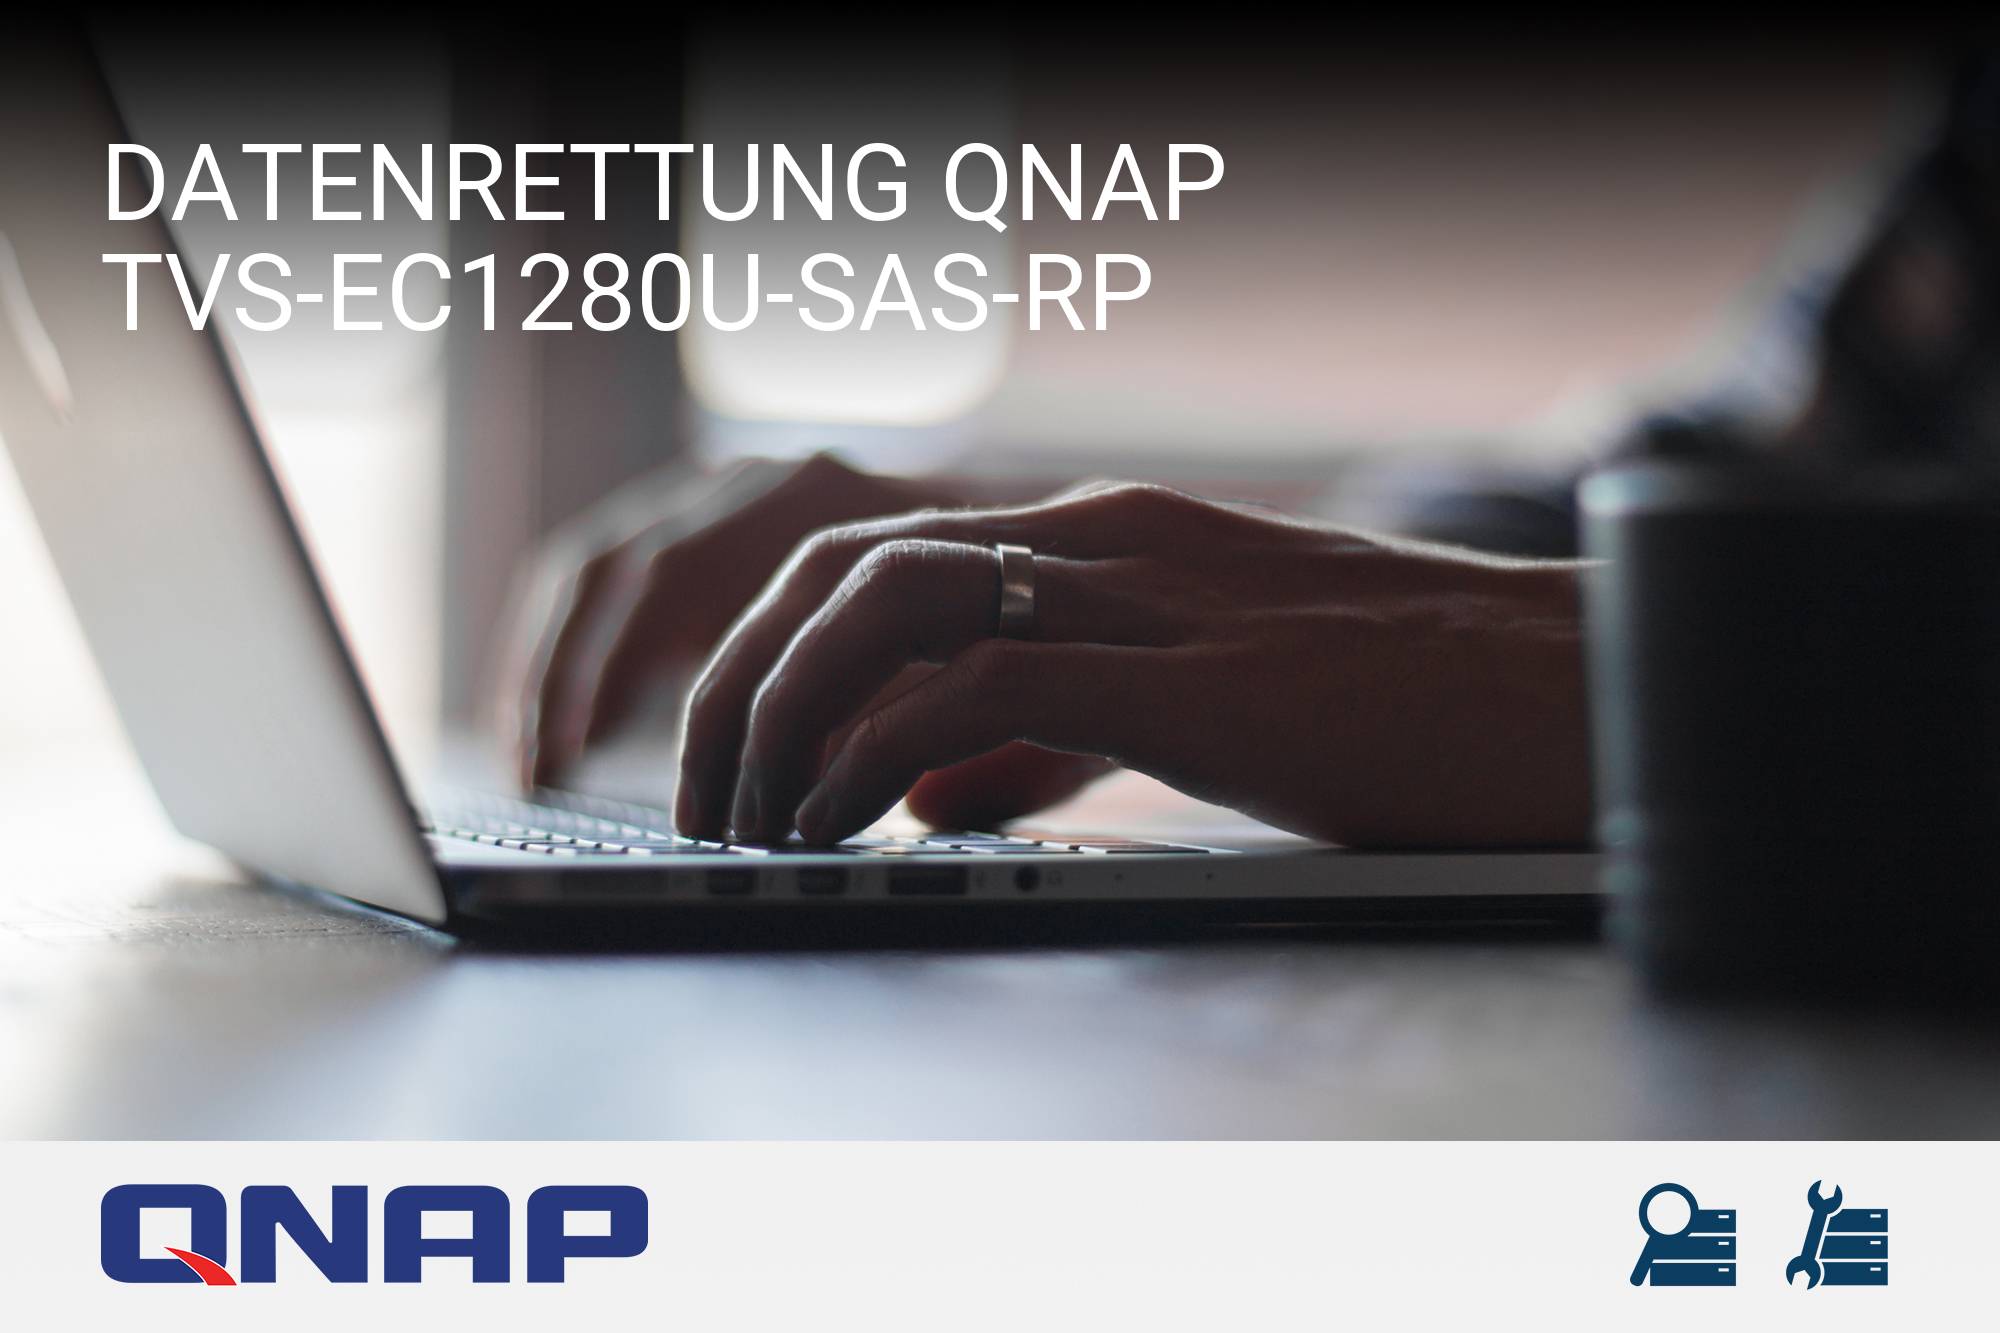 QNAP TVS-EC1280U-SAS-RP